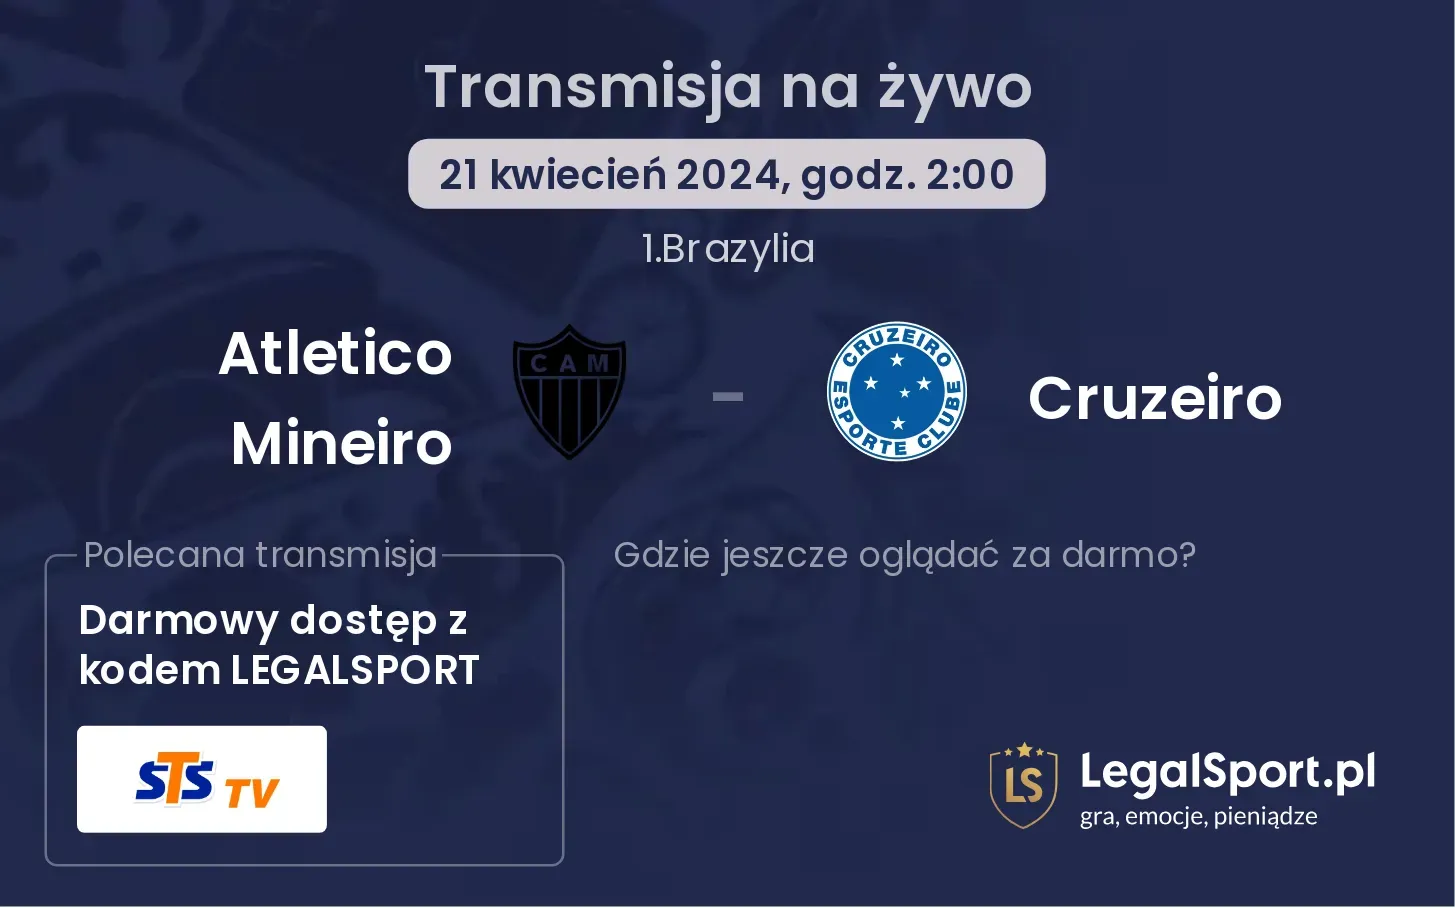 Atletico Mineiro - Cruzeiro transmisja na żywo